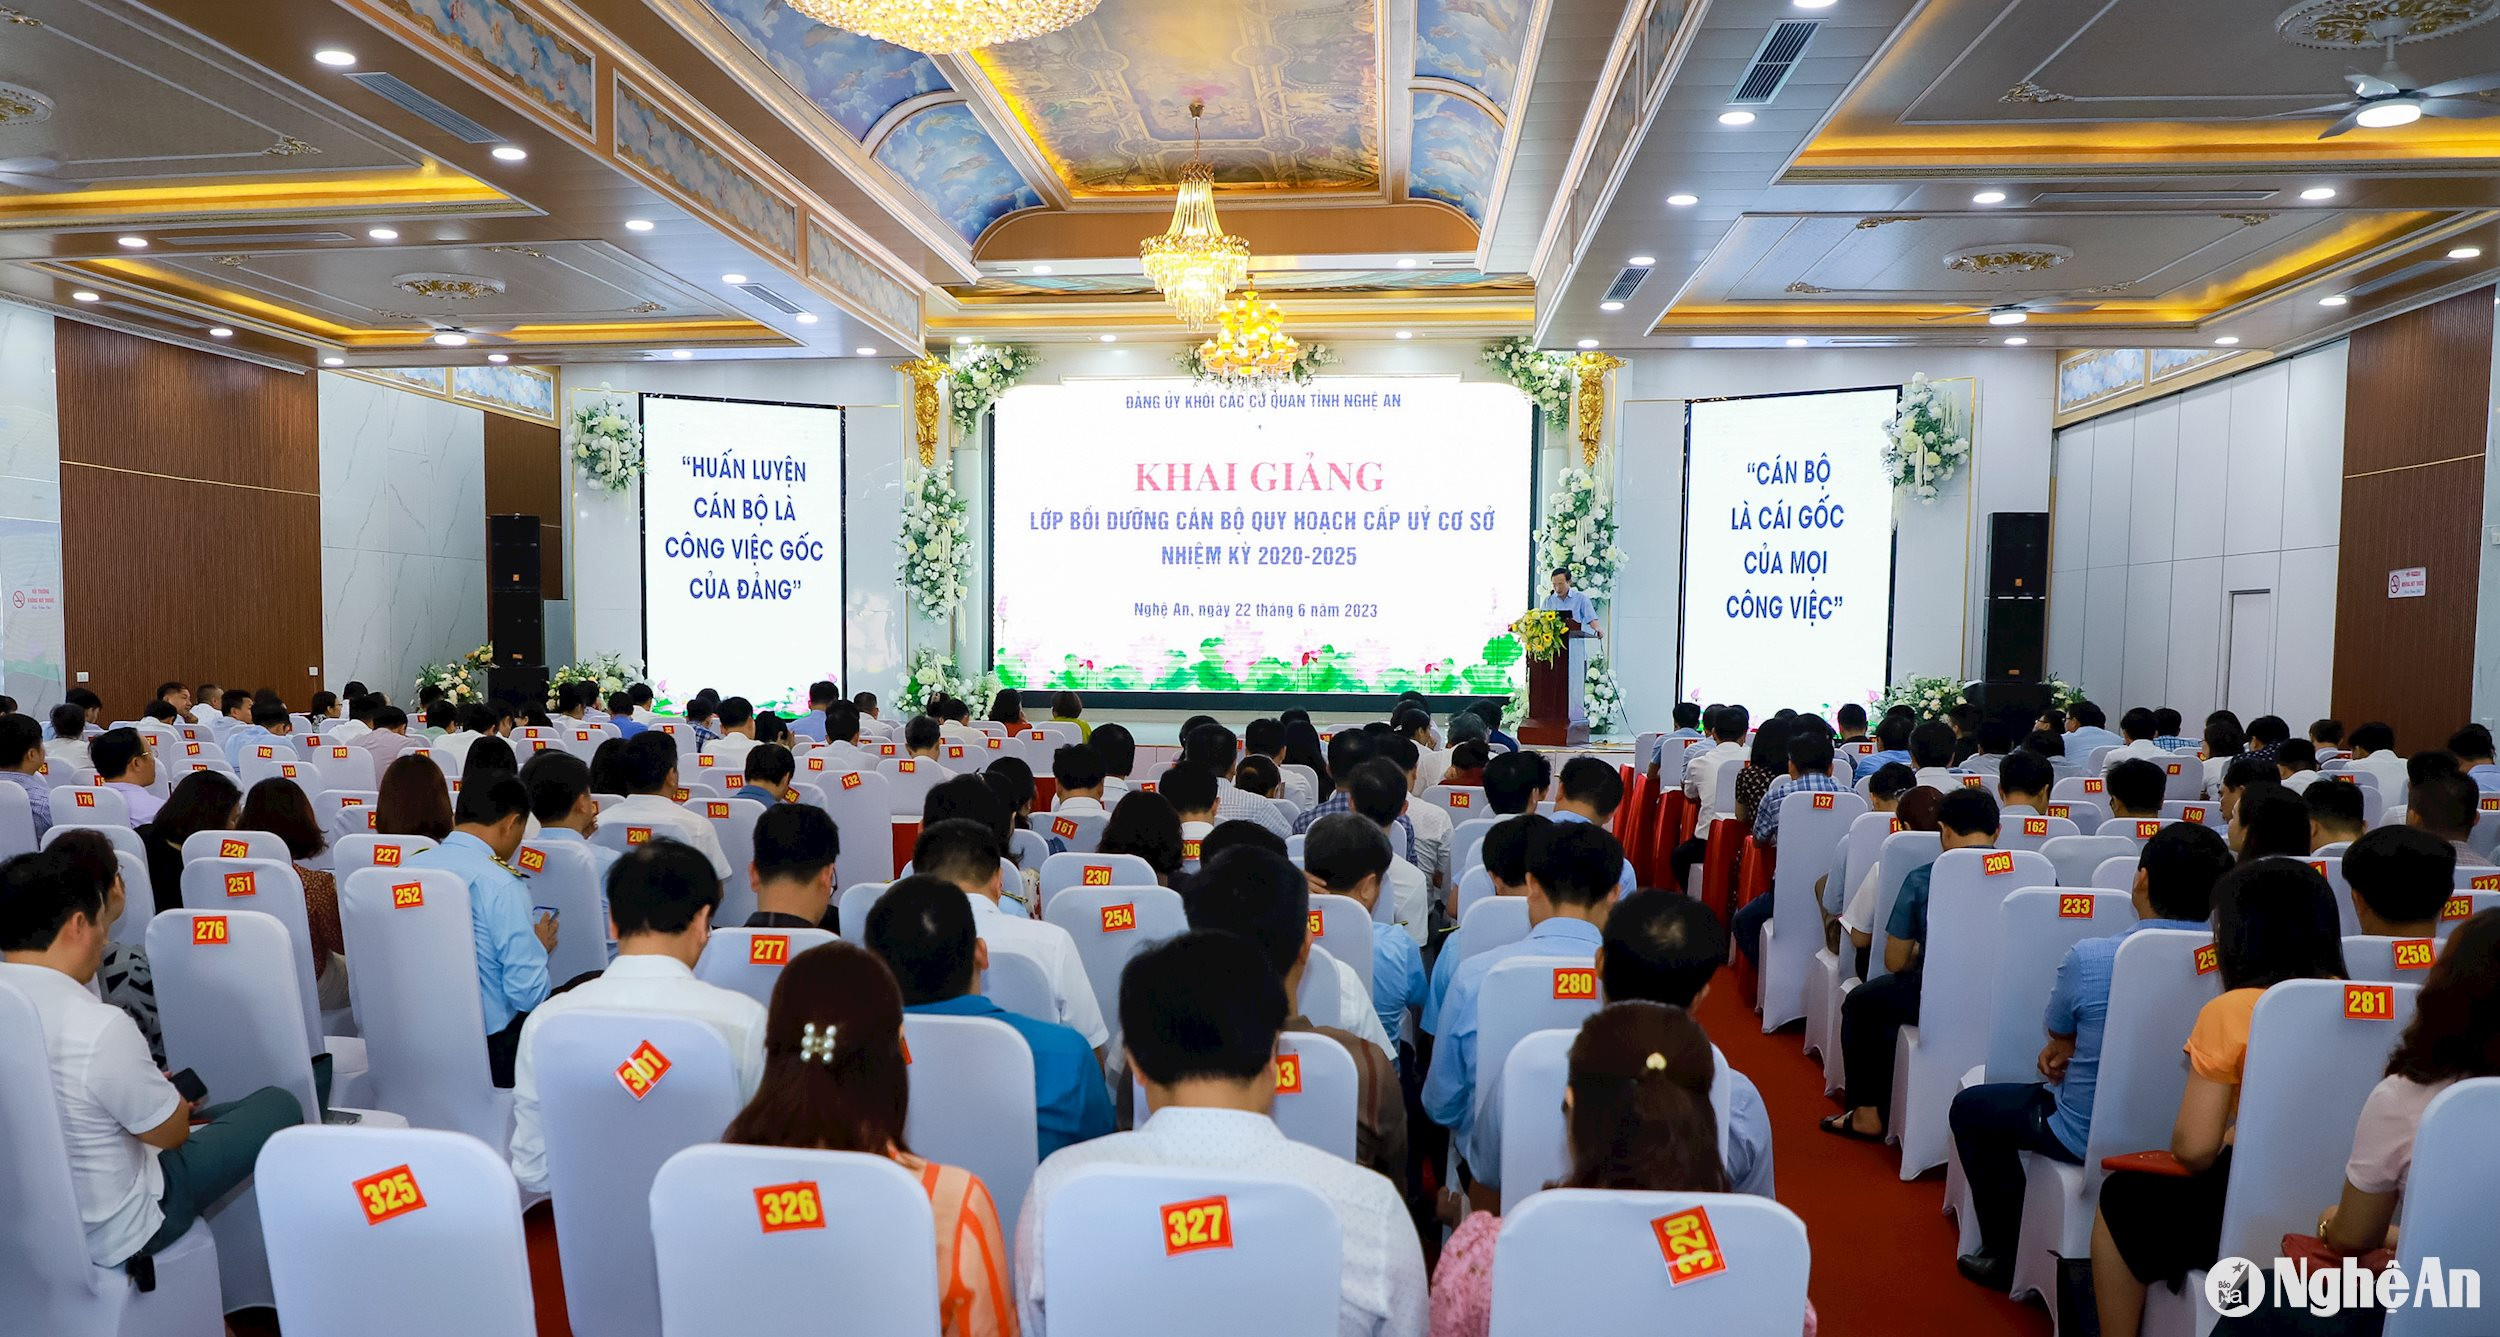 Toàn cảnh lớp bồi dưỡng quy hoạch cấp ủy cơ sở nhiệm kỳ 2020 -2025 do Đảng ủy Khối CCQ tỉnh Nghệ An tổ chức. Ảnh tư liệu: Thành Duy